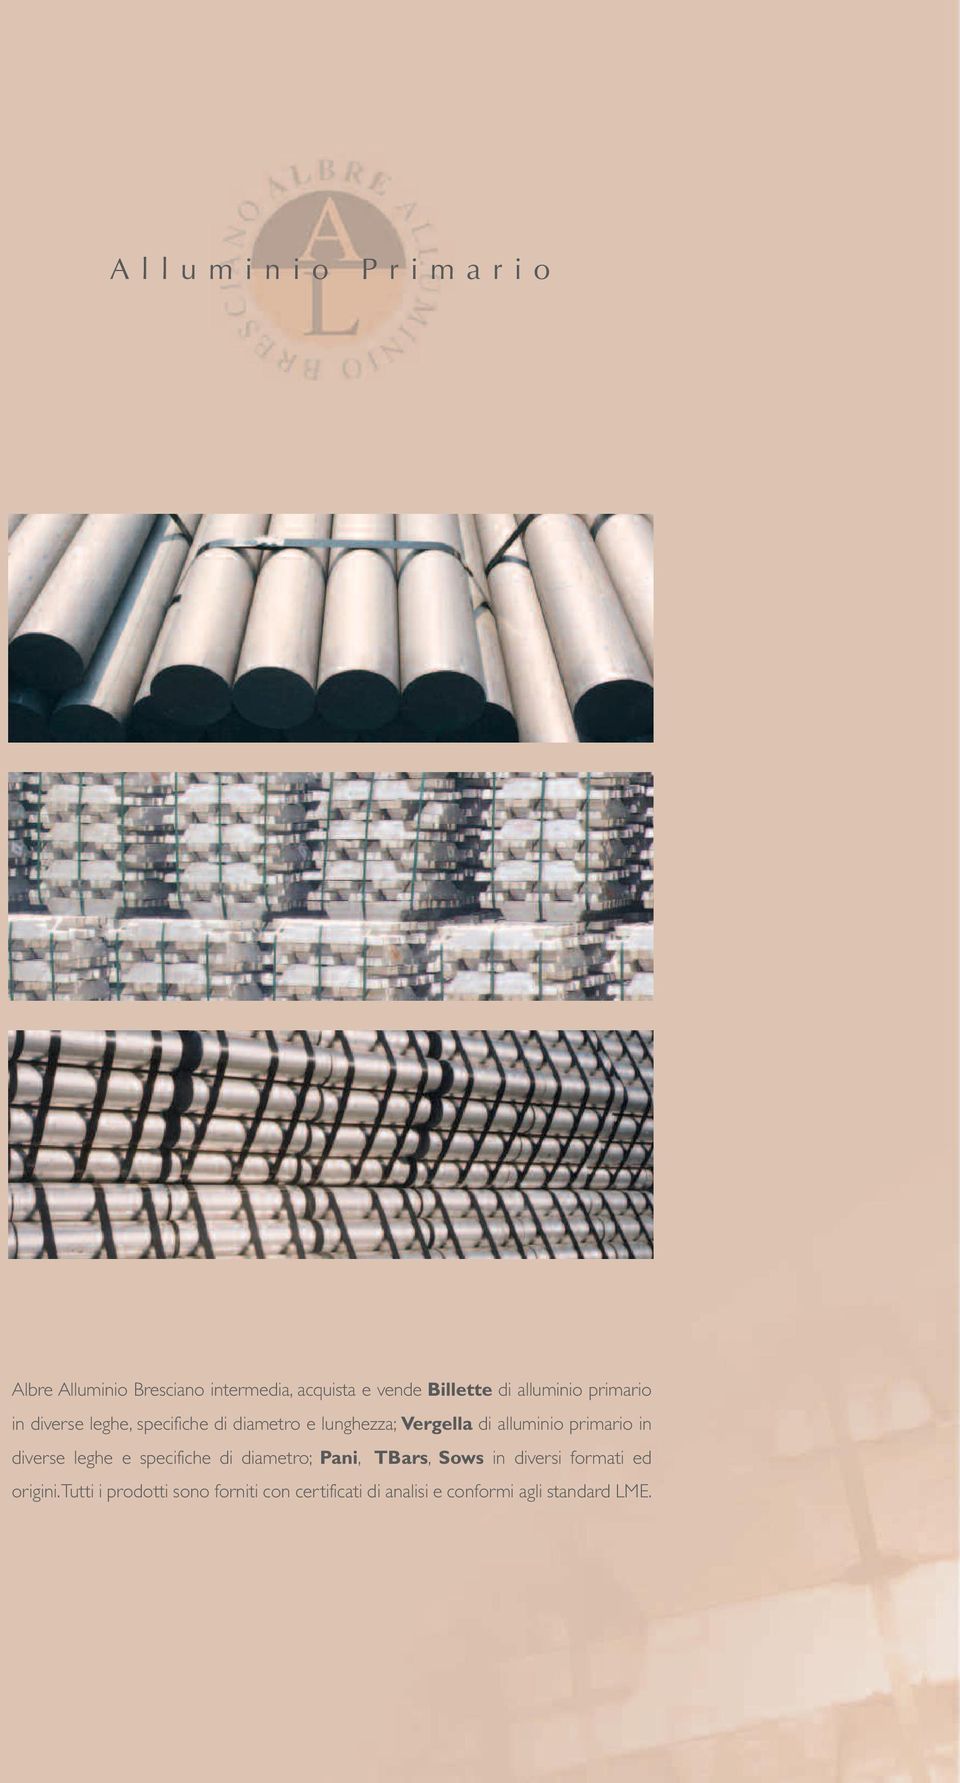 alluminio primario in diverse leghe e specifiche di diametro; Pani, TBars, Sows in diversi